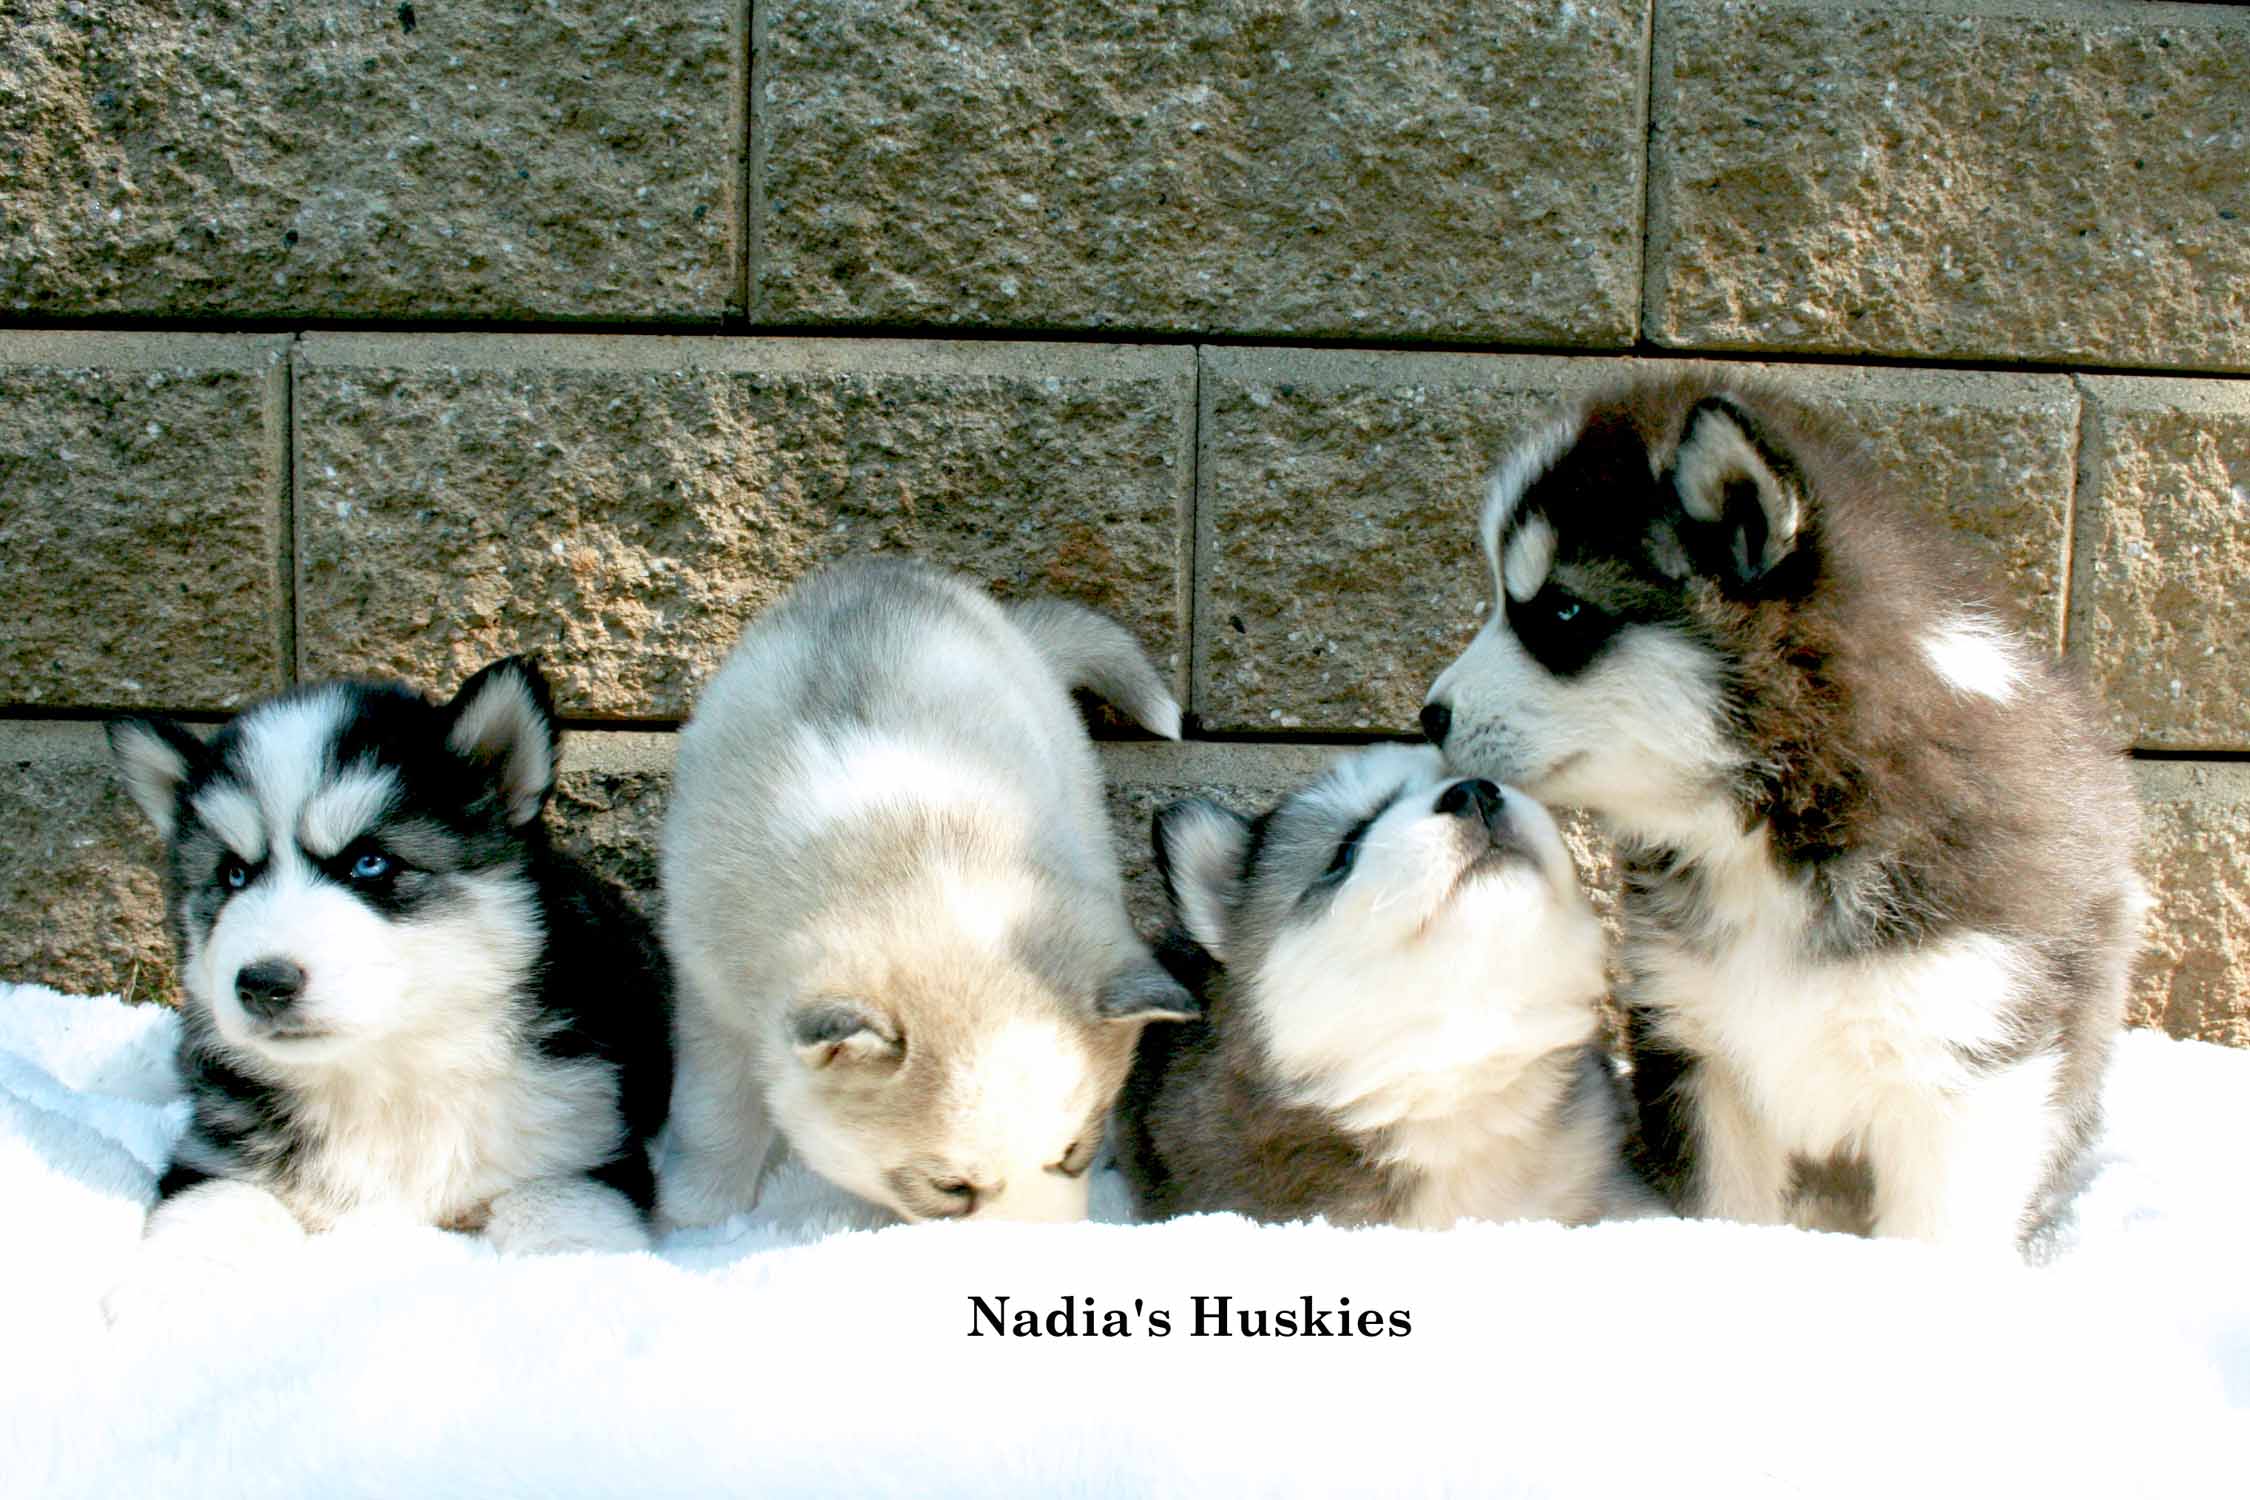 Nadiu's Huskies